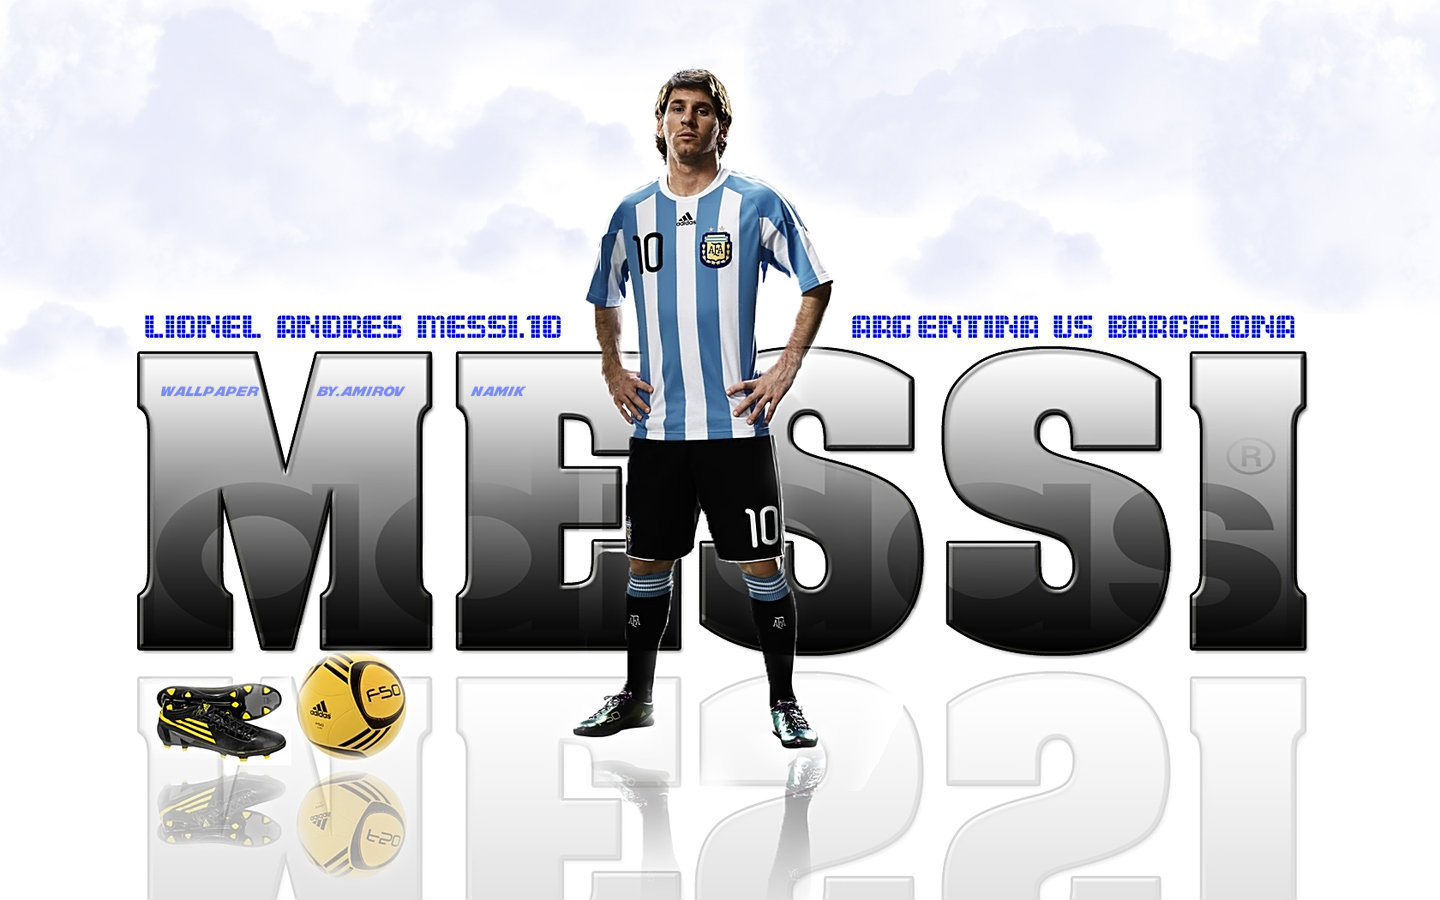 Bạn đam mê bóng đá và Lionel Messi? Đừng bỏ qua cơ hội để sở hữu miễn phí hình nền Lionel Messi Argentina đầy màu sắc và cuốn hút. Hãy tải ngay và cài đặt ngay trên máy tính hay điện thoại của bạn để được chiêm ngưỡng những khoảnh khắc đẹp nhất của Messi.